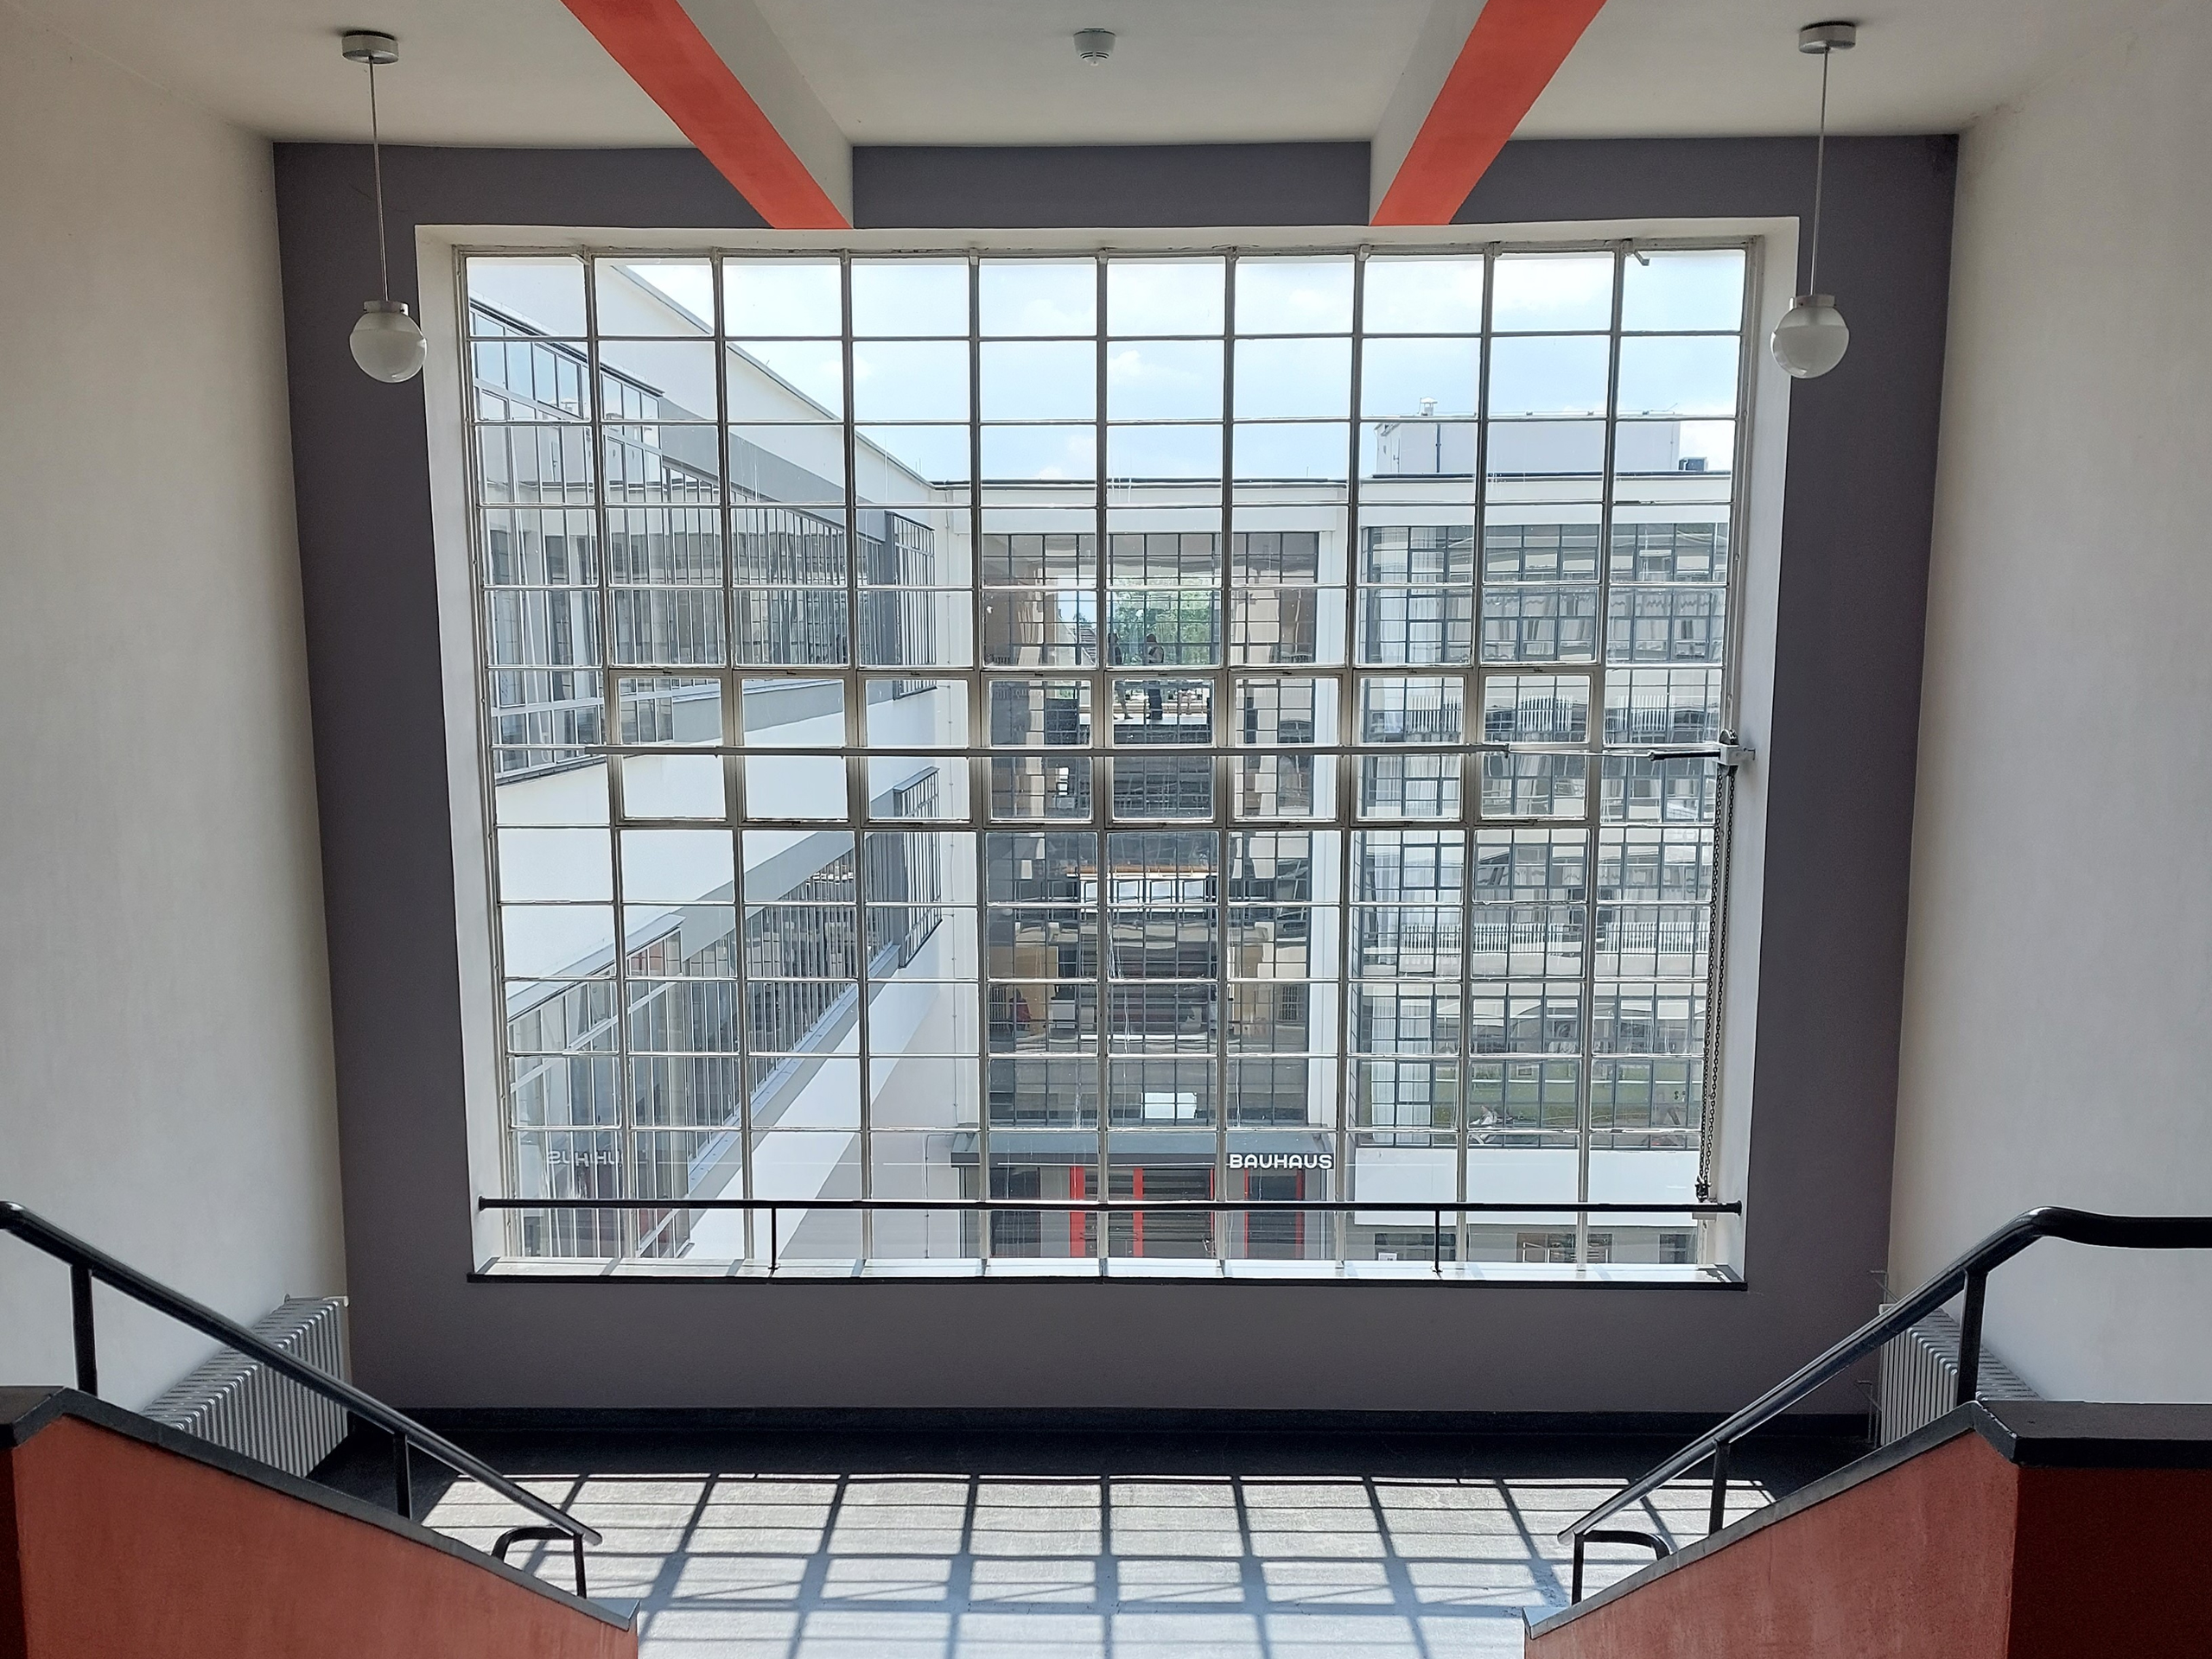 Blick aus einer Fensterfront im Bauhaus-Gebäude in Dessau auf den gegenüber liegenden Haupteingang.